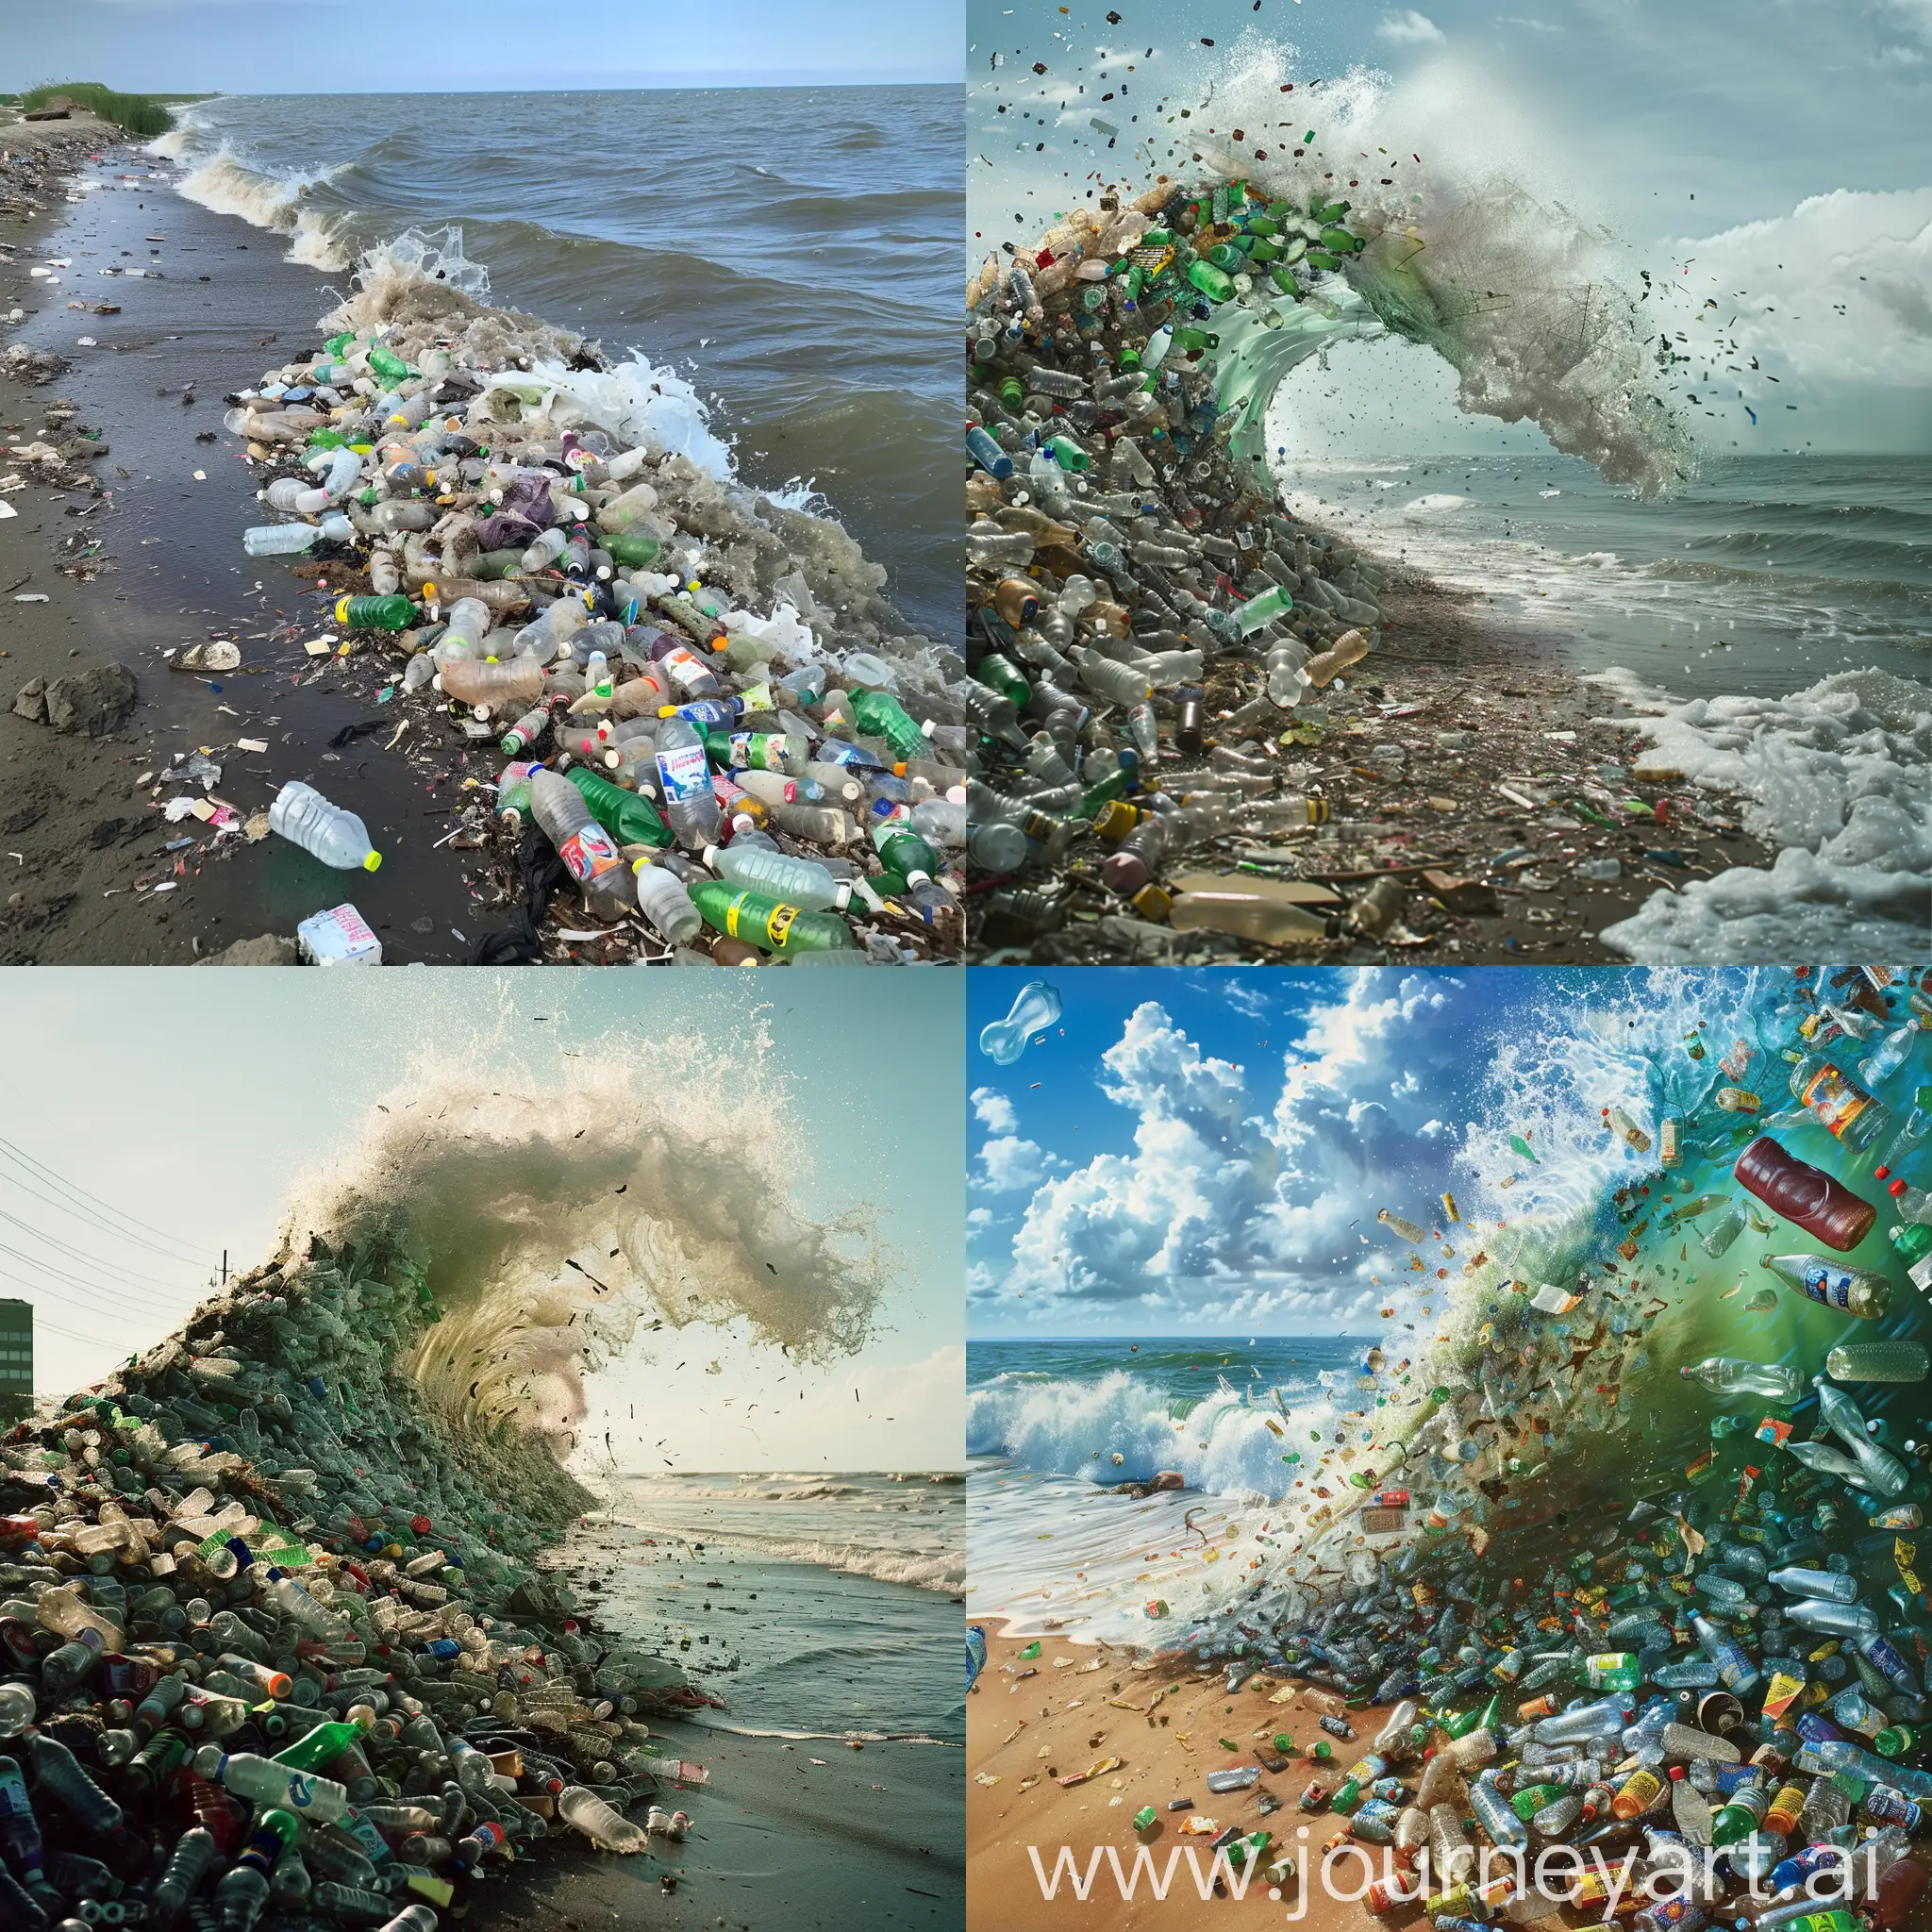  цунами мусора и пластиковых бутылок, обрушивающееся на берег.